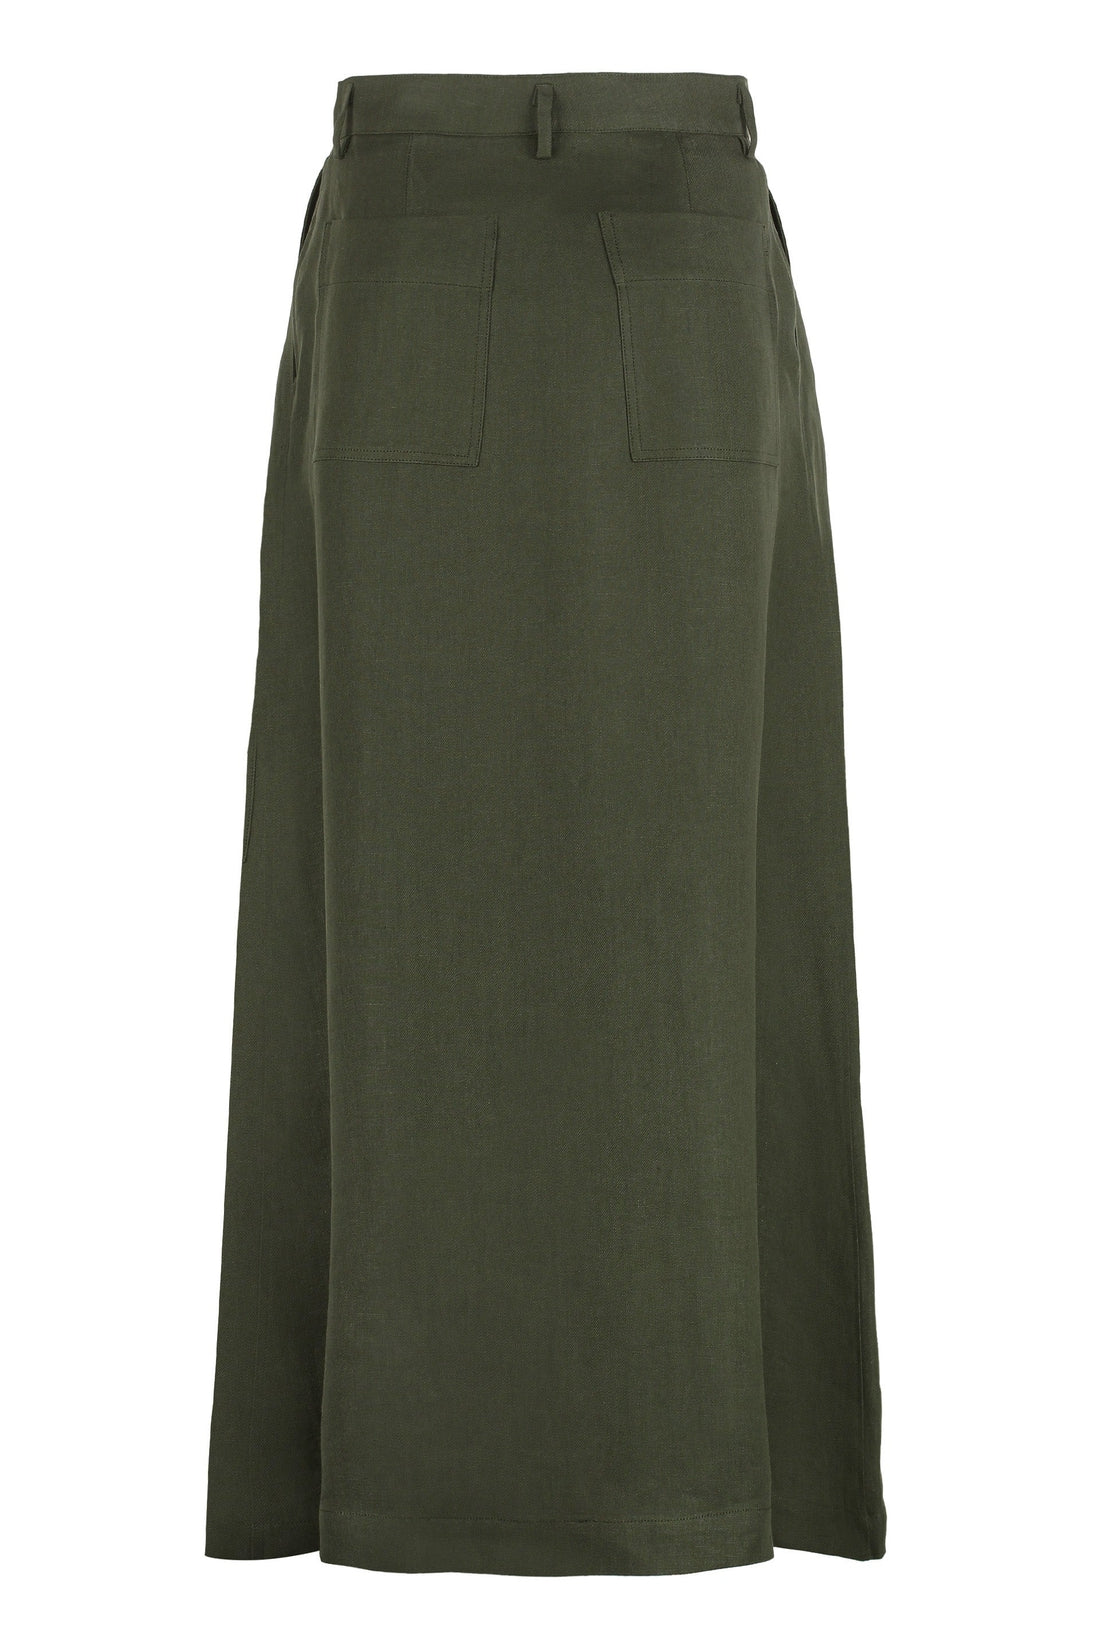 Parosh-OUTLET-SALE-Linen skirt-ARCHIVIST